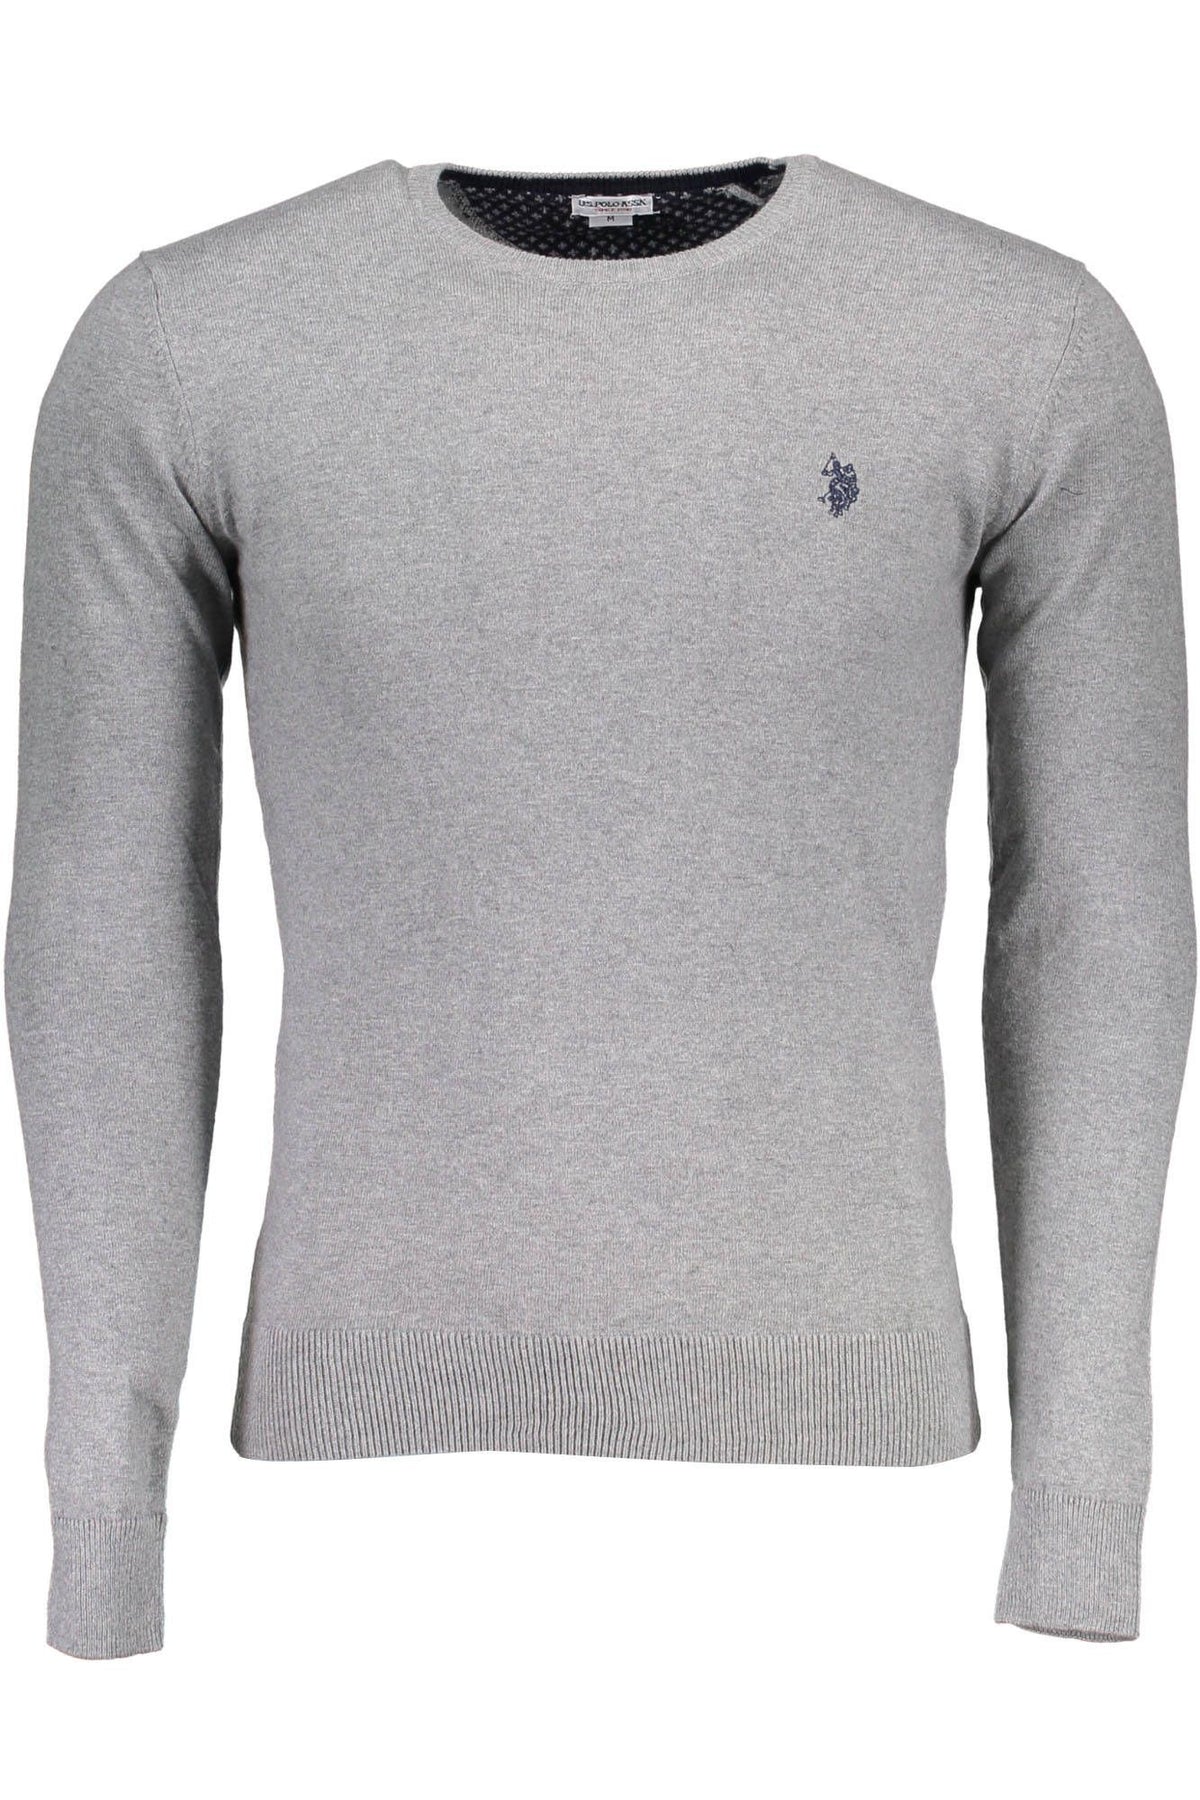 U.S. Polo Assn. Herren Pullover Sweatshirt mit Rundhalsausschnitt, langarm